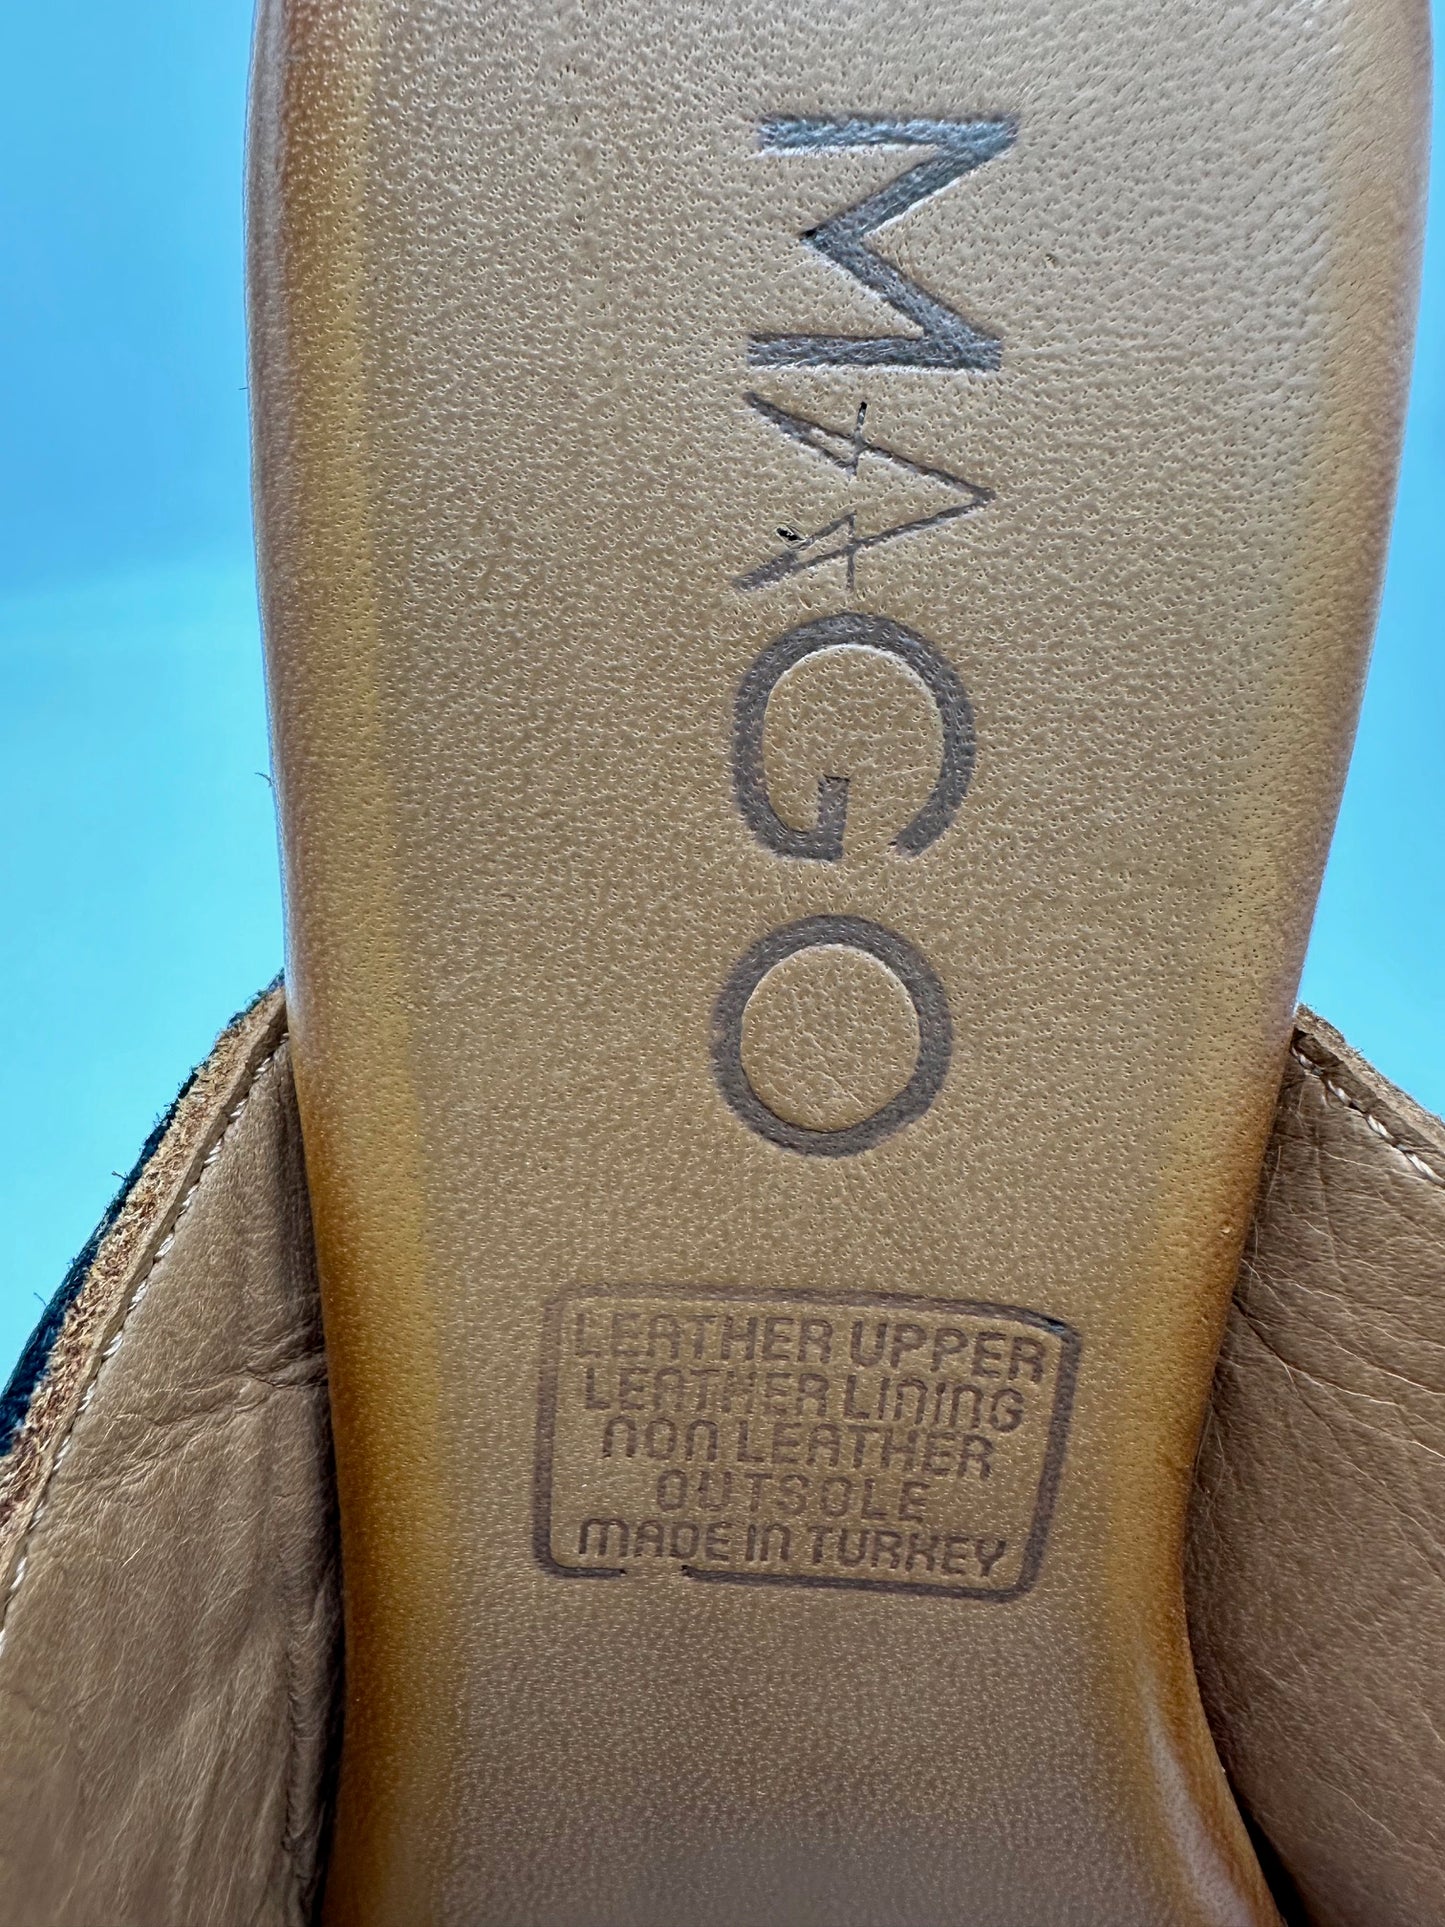 MAGO 066-1726 Slip On Sandal